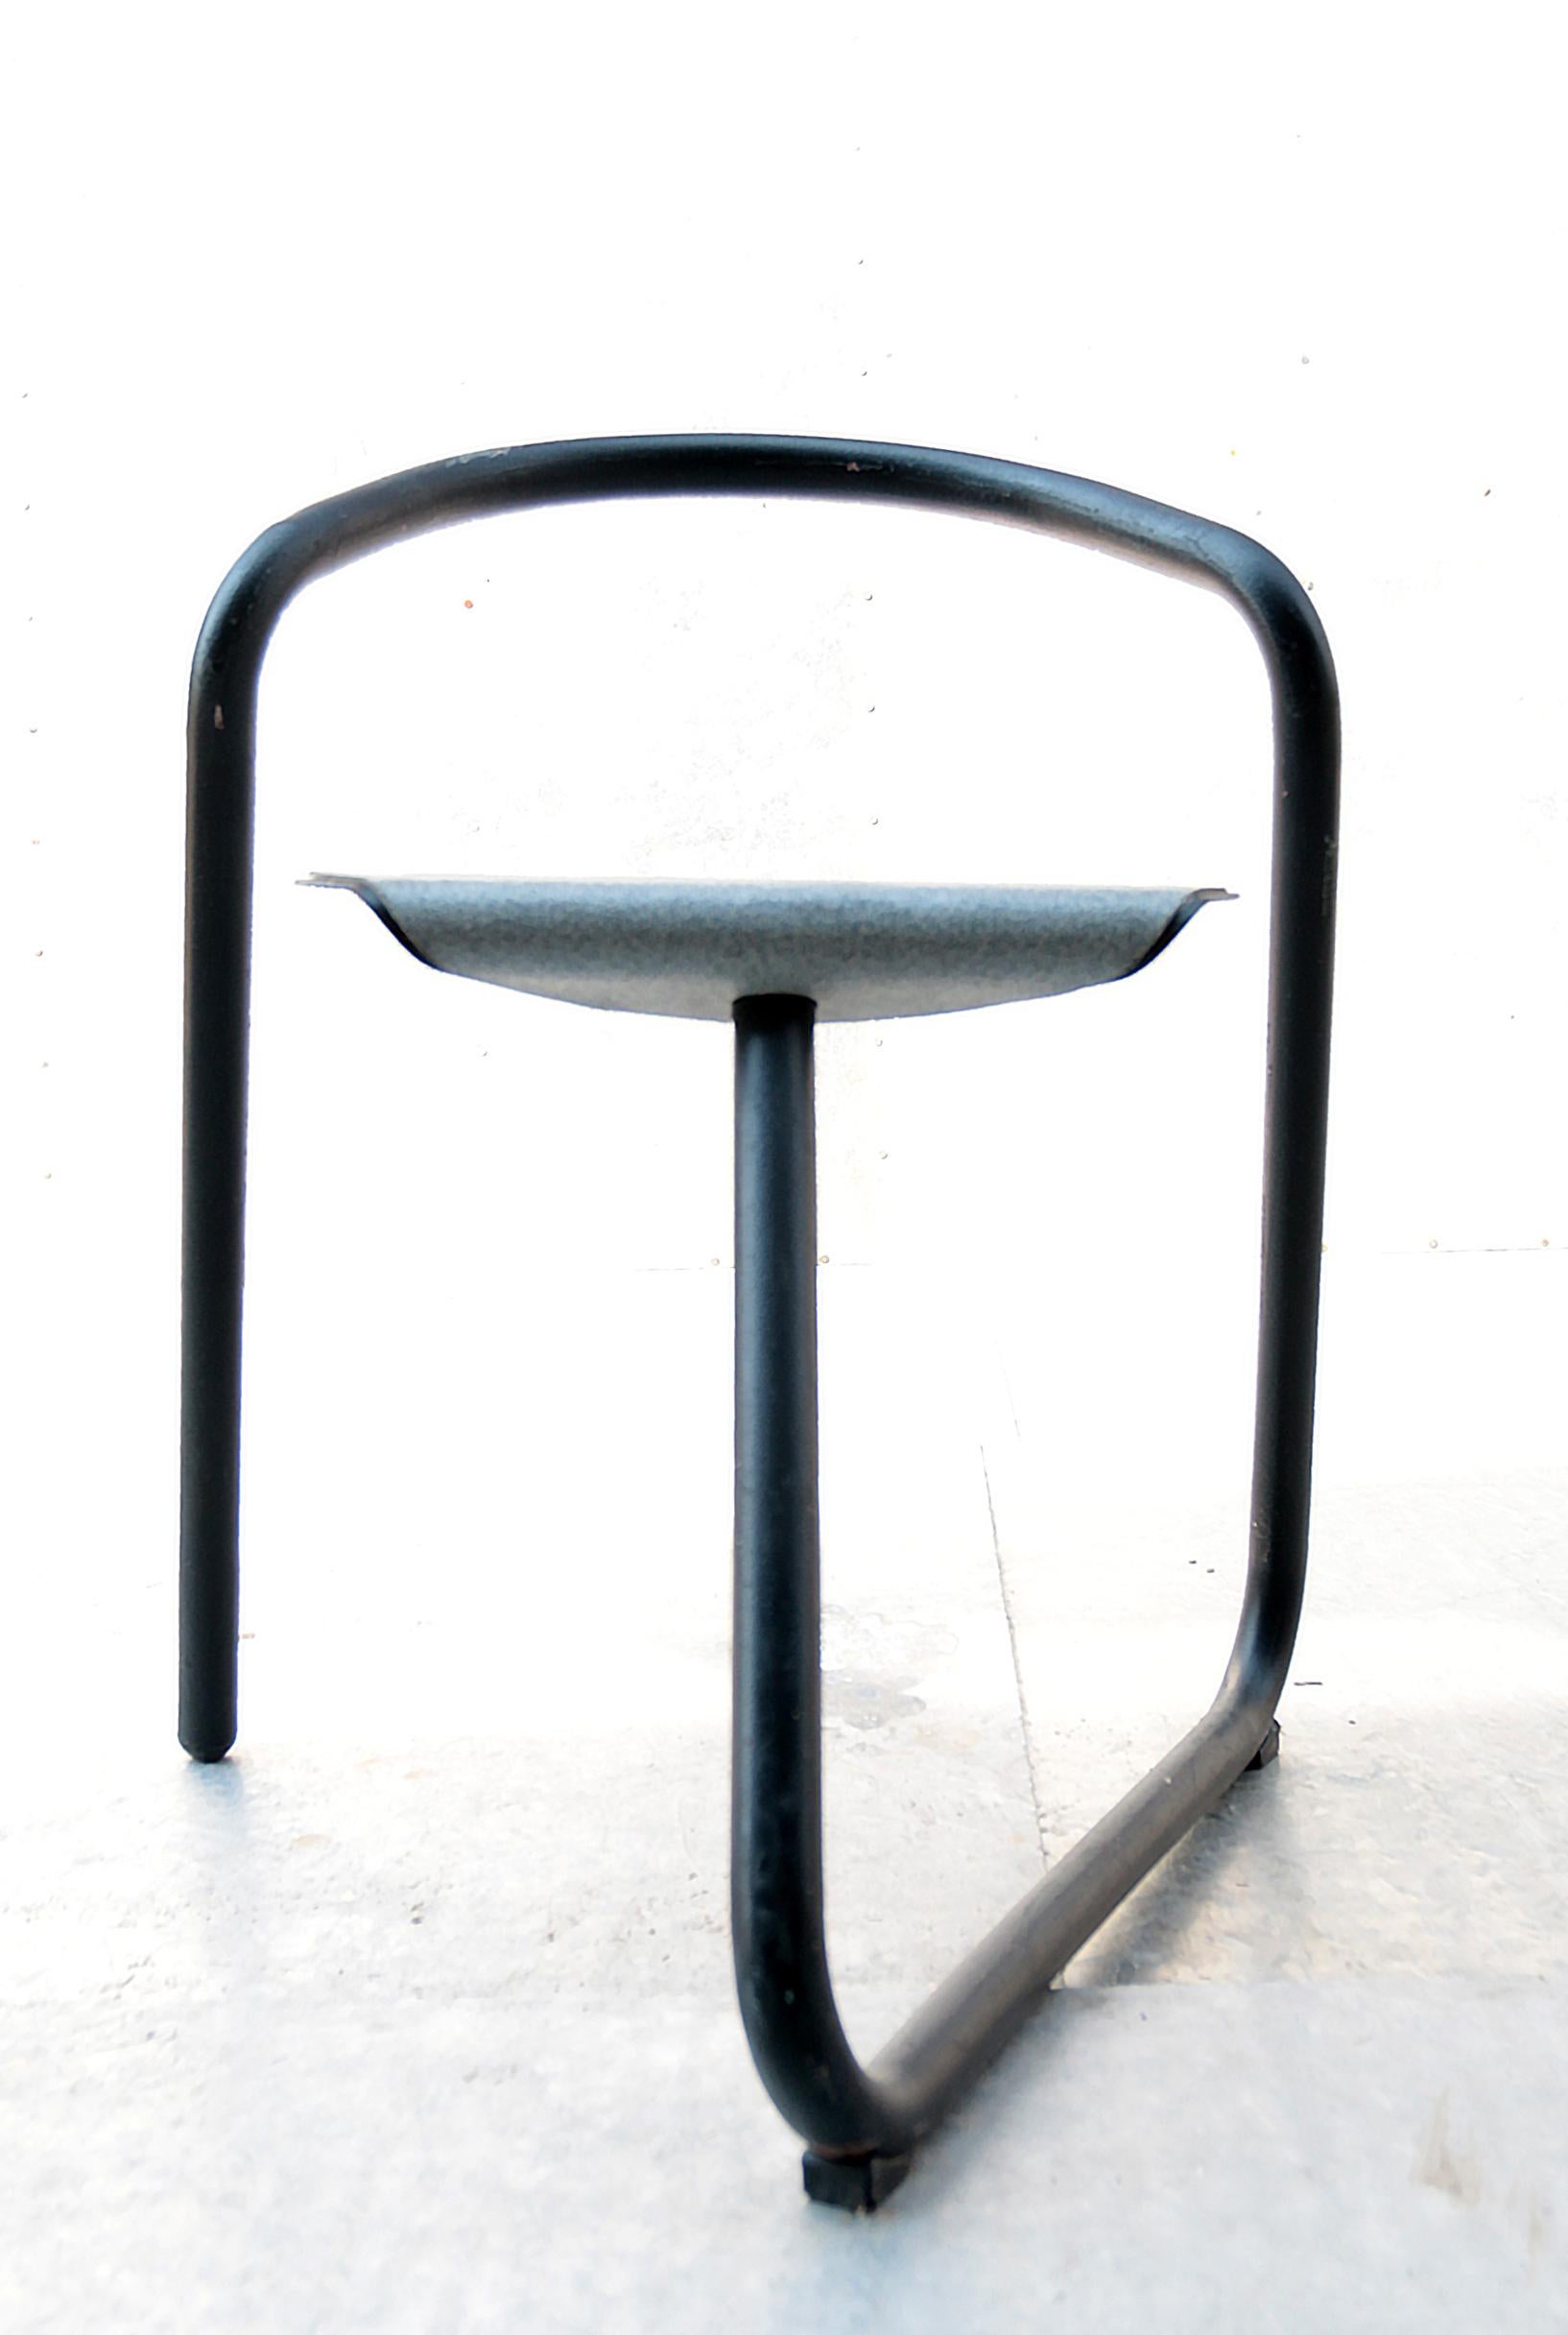 Sehr seltener großer Satz von achtzehn 'Magnus'-Stühlen, entworfen von dem berühmten dänischen Designer Erik Magnussen.
